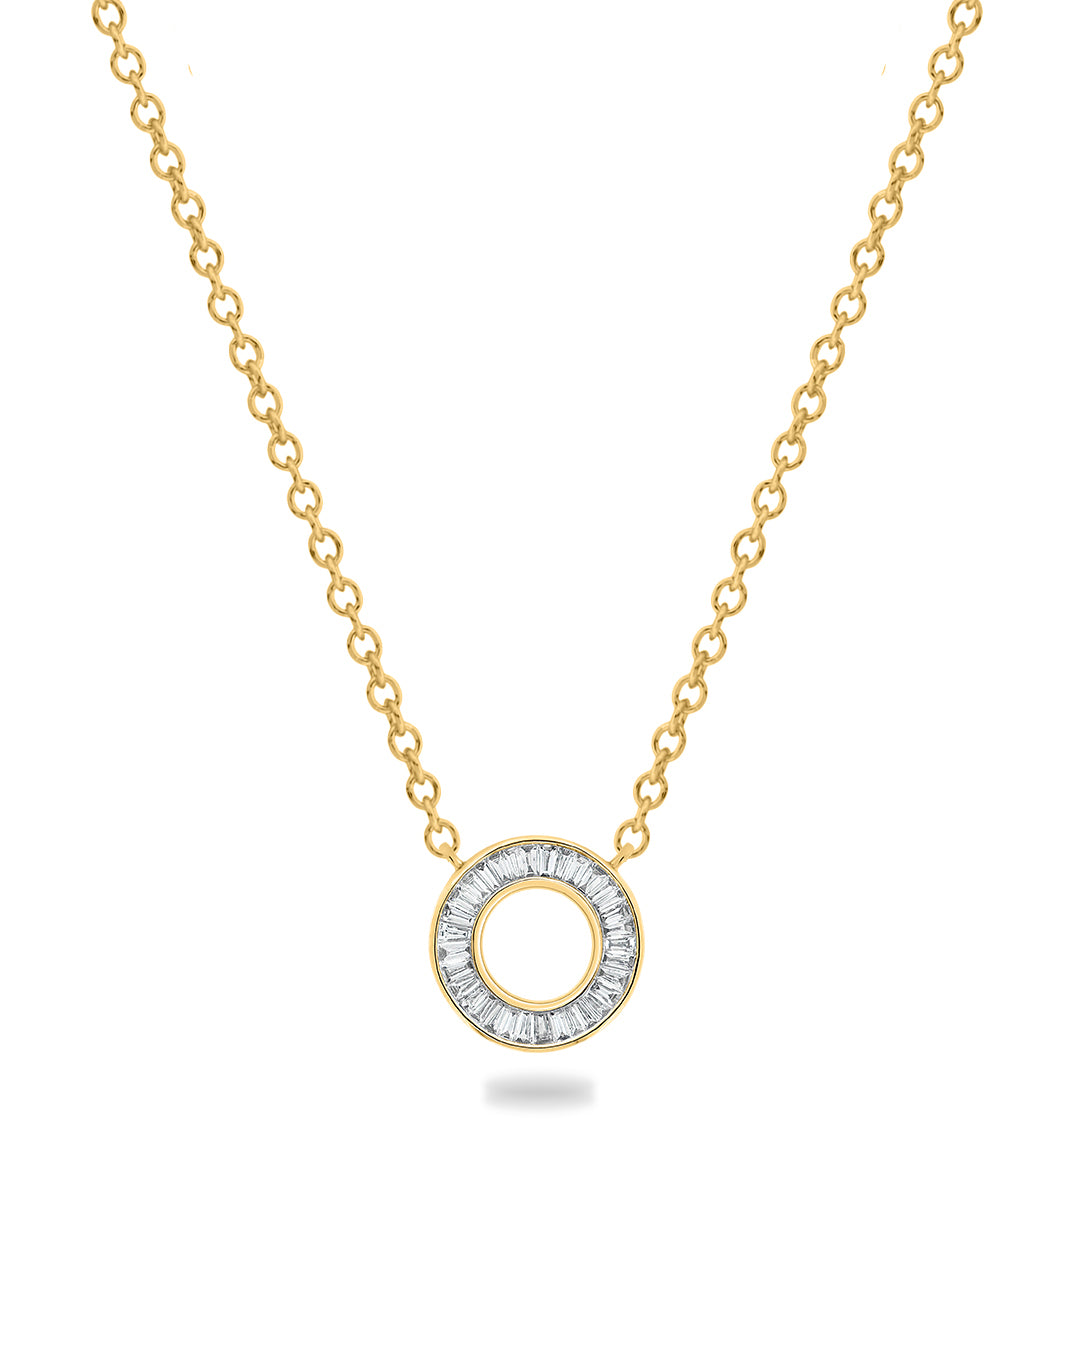 Ova Baguette Diamond Necklace